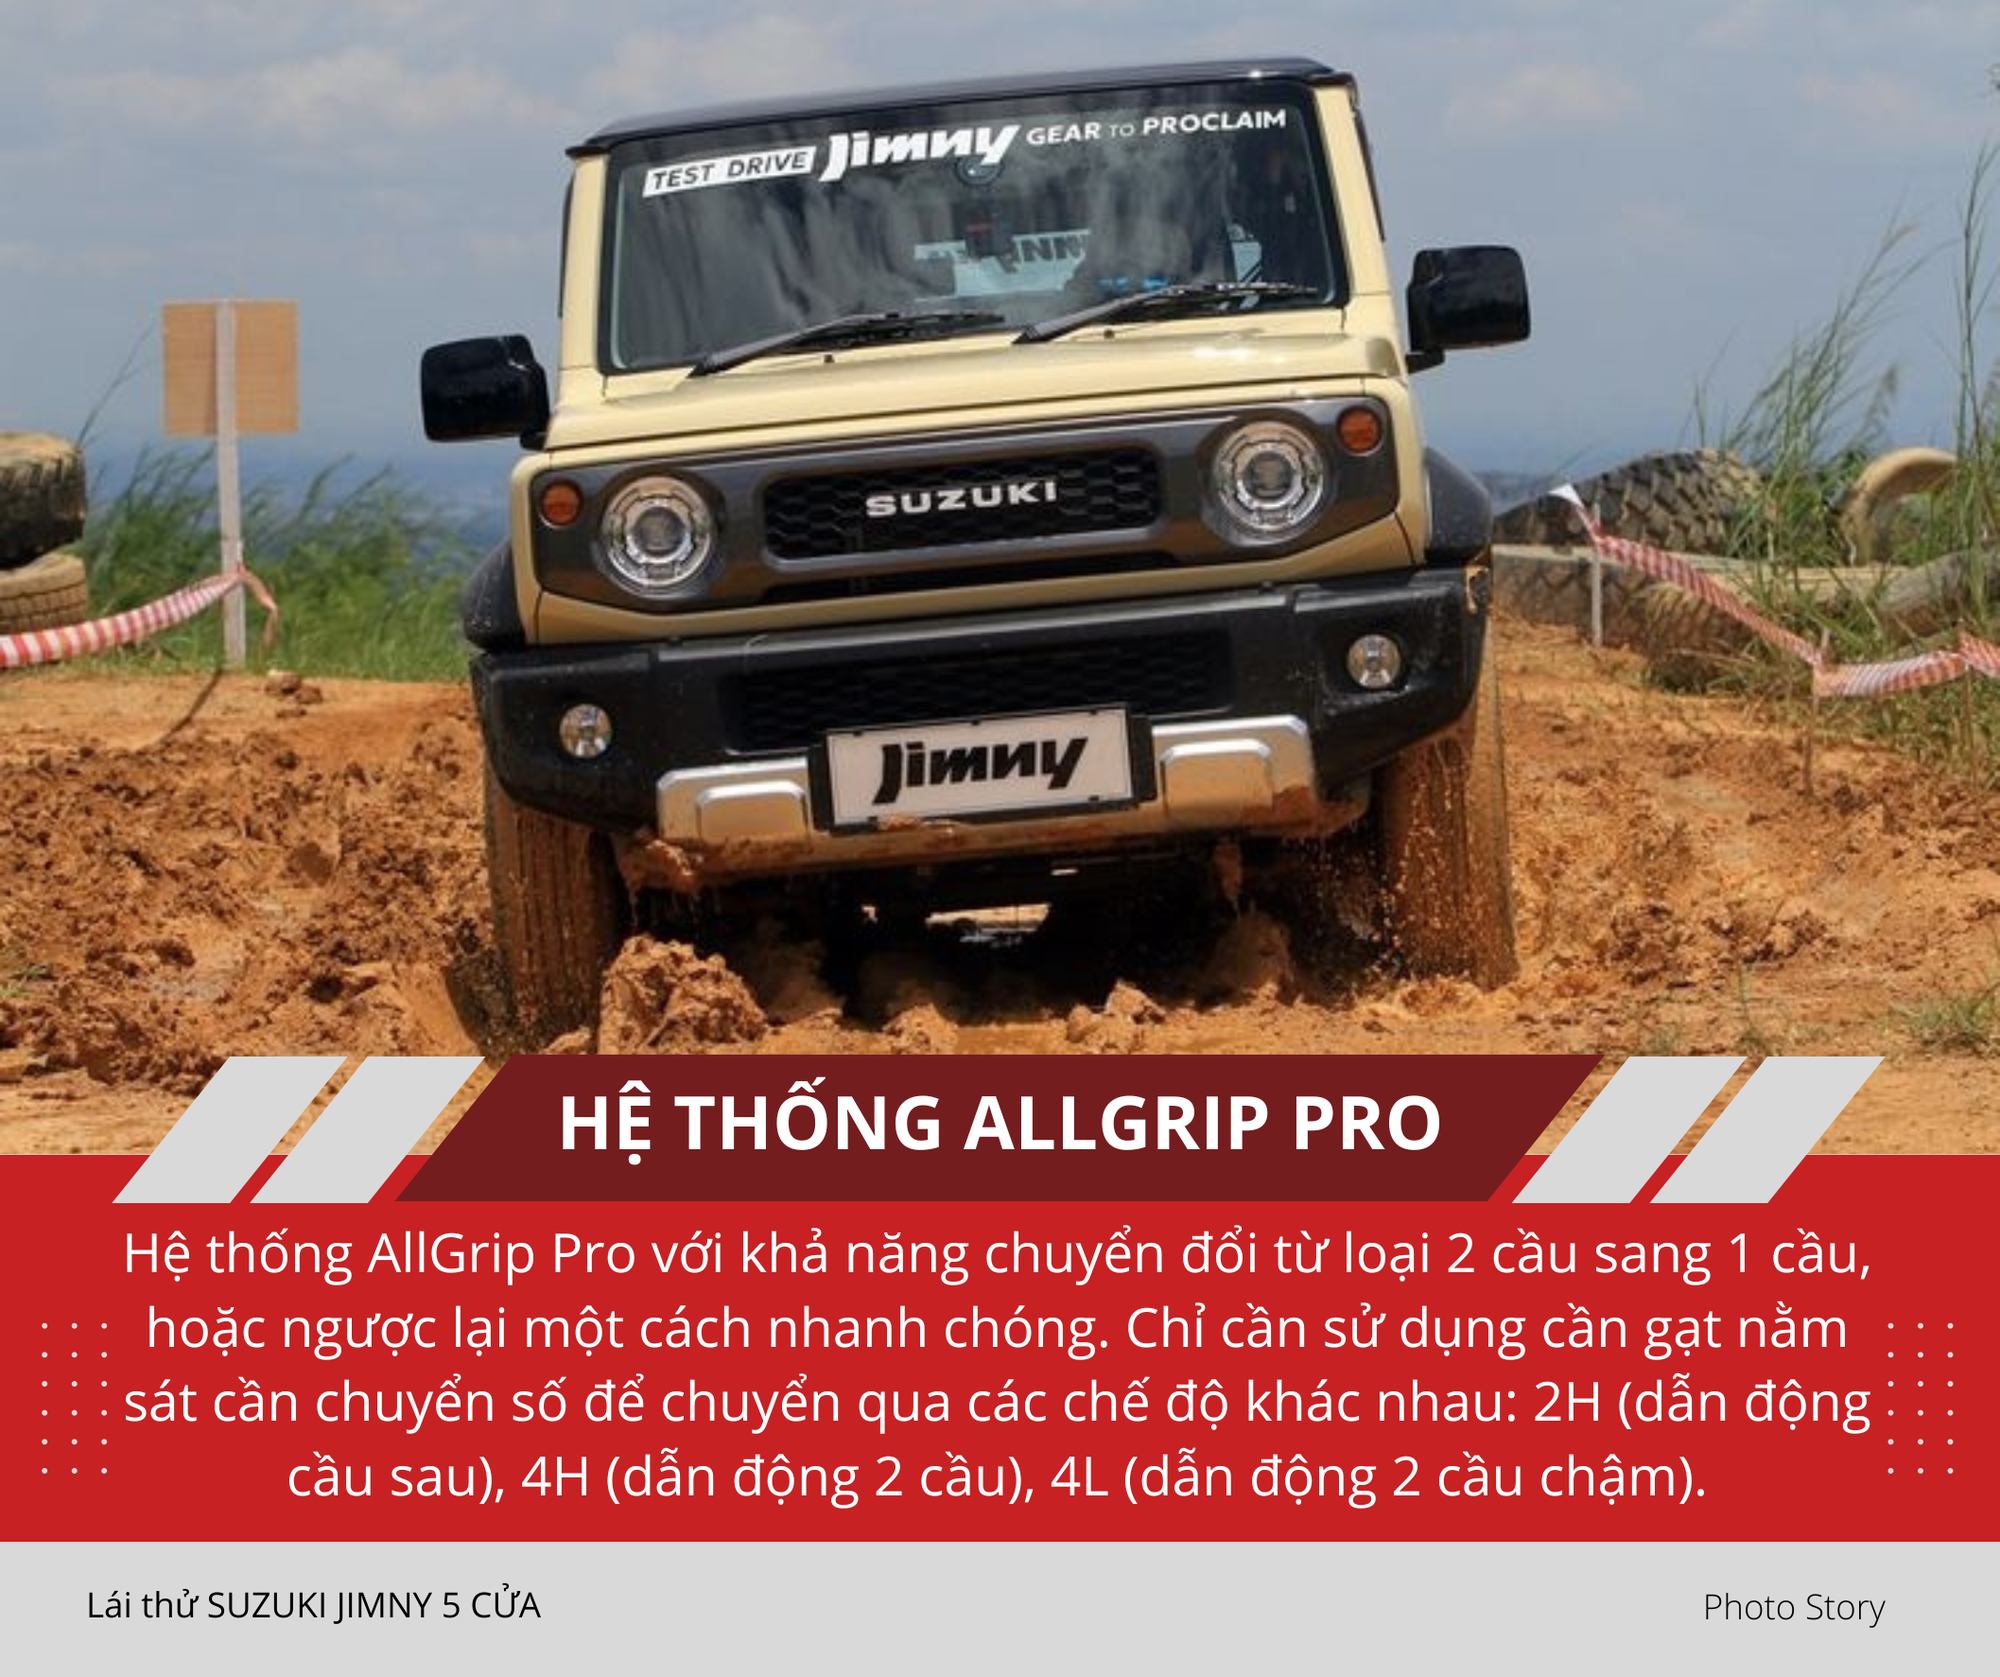 Mang Suzuki Jimny 5 cửa vào rừng 'hành hạ': Nhiều điểm hơn hẳn bản 3 cửa sắp ra mắt Việt Nam, thoải mái cho cả nhà cùng off-road- Ảnh 5.